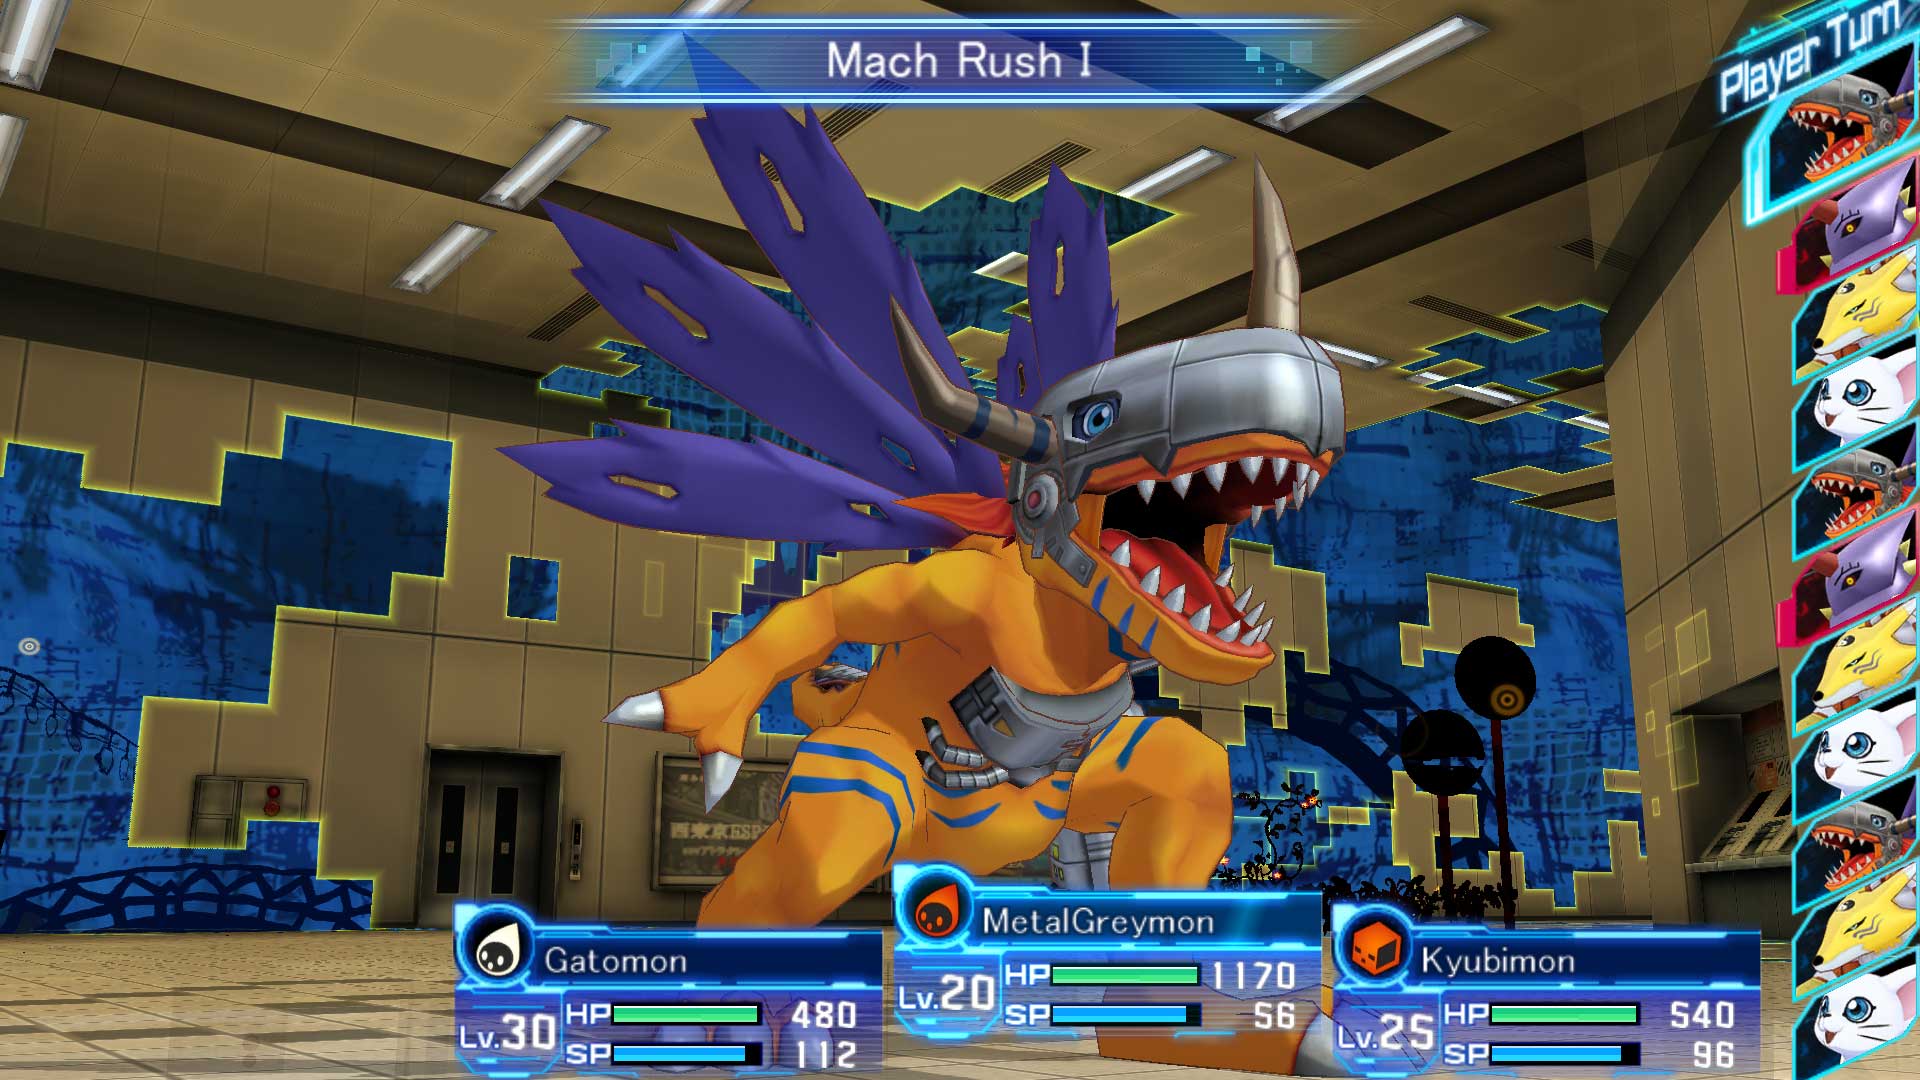 Universo DMO - Hoje lançou finalmente no ocidente o Digimon Story Cyber  Sleuth, que já pode ser comprado digitalmente para PS4 e PSVita, que também  vem com uma DLC e 2 Temas.